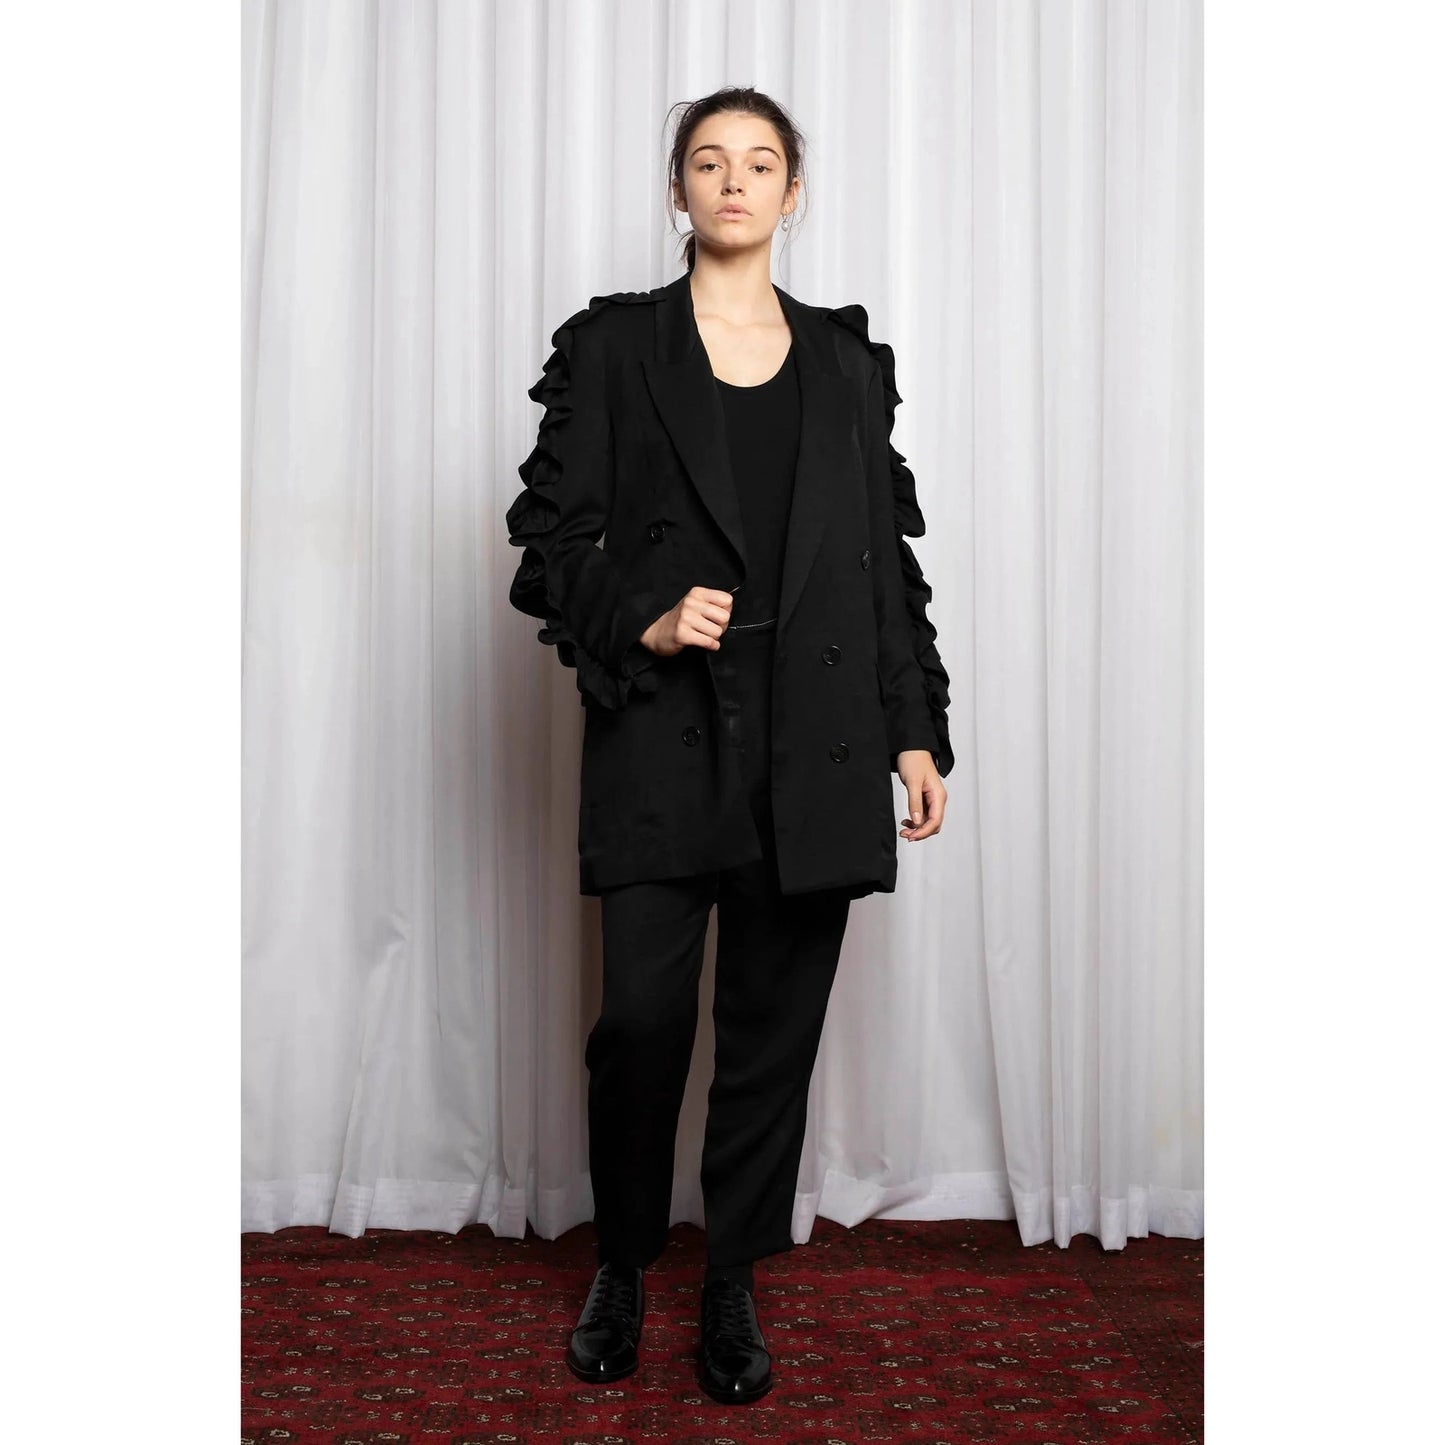 Salasai oversized linen blend black frill blazer | size 8-10 RRP $491